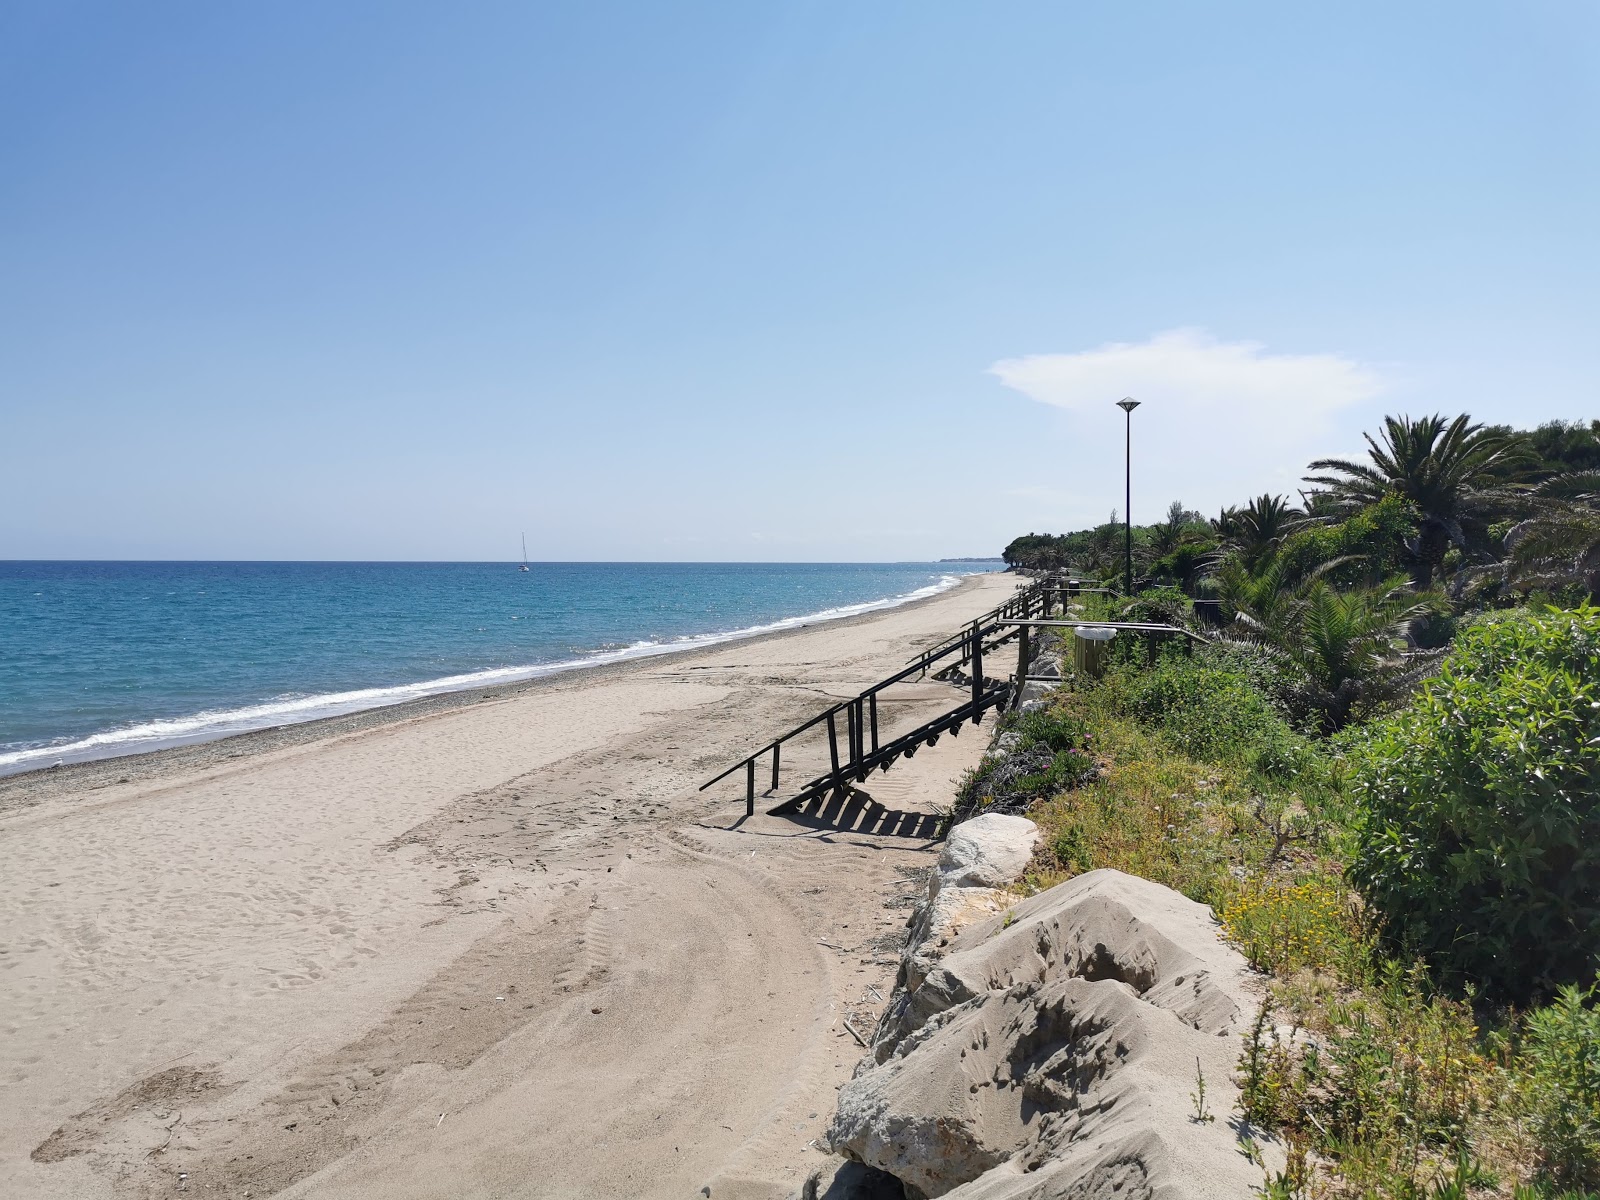 Platja dels Pilans'in fotoğrafı geniş plaj ile birlikte